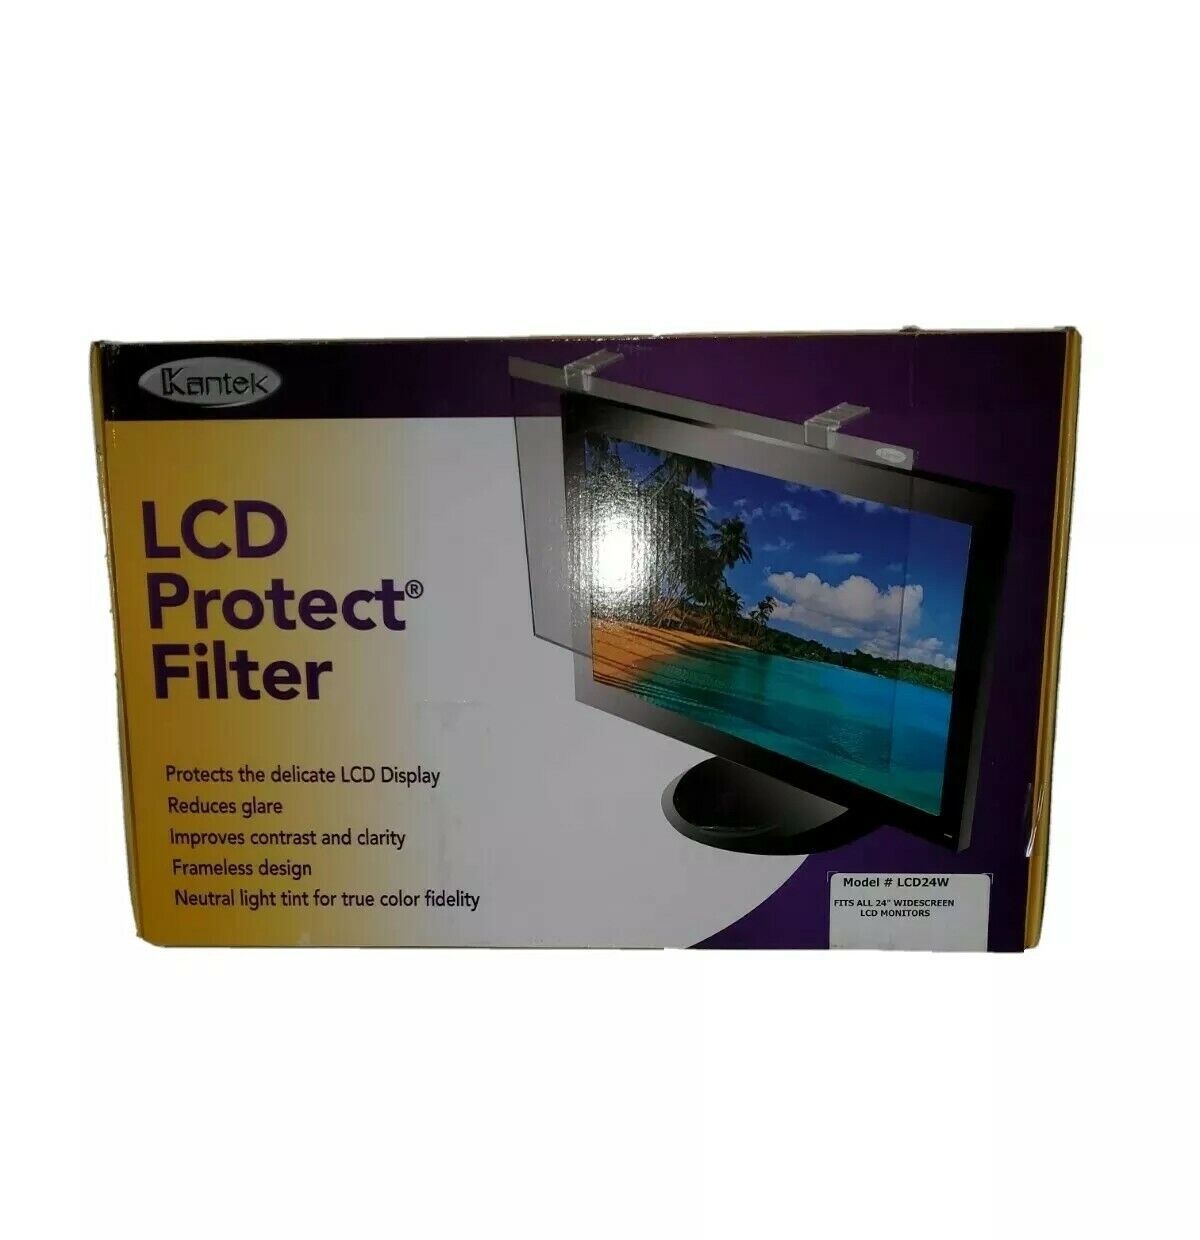 Kantek LCD Protect Filter 24